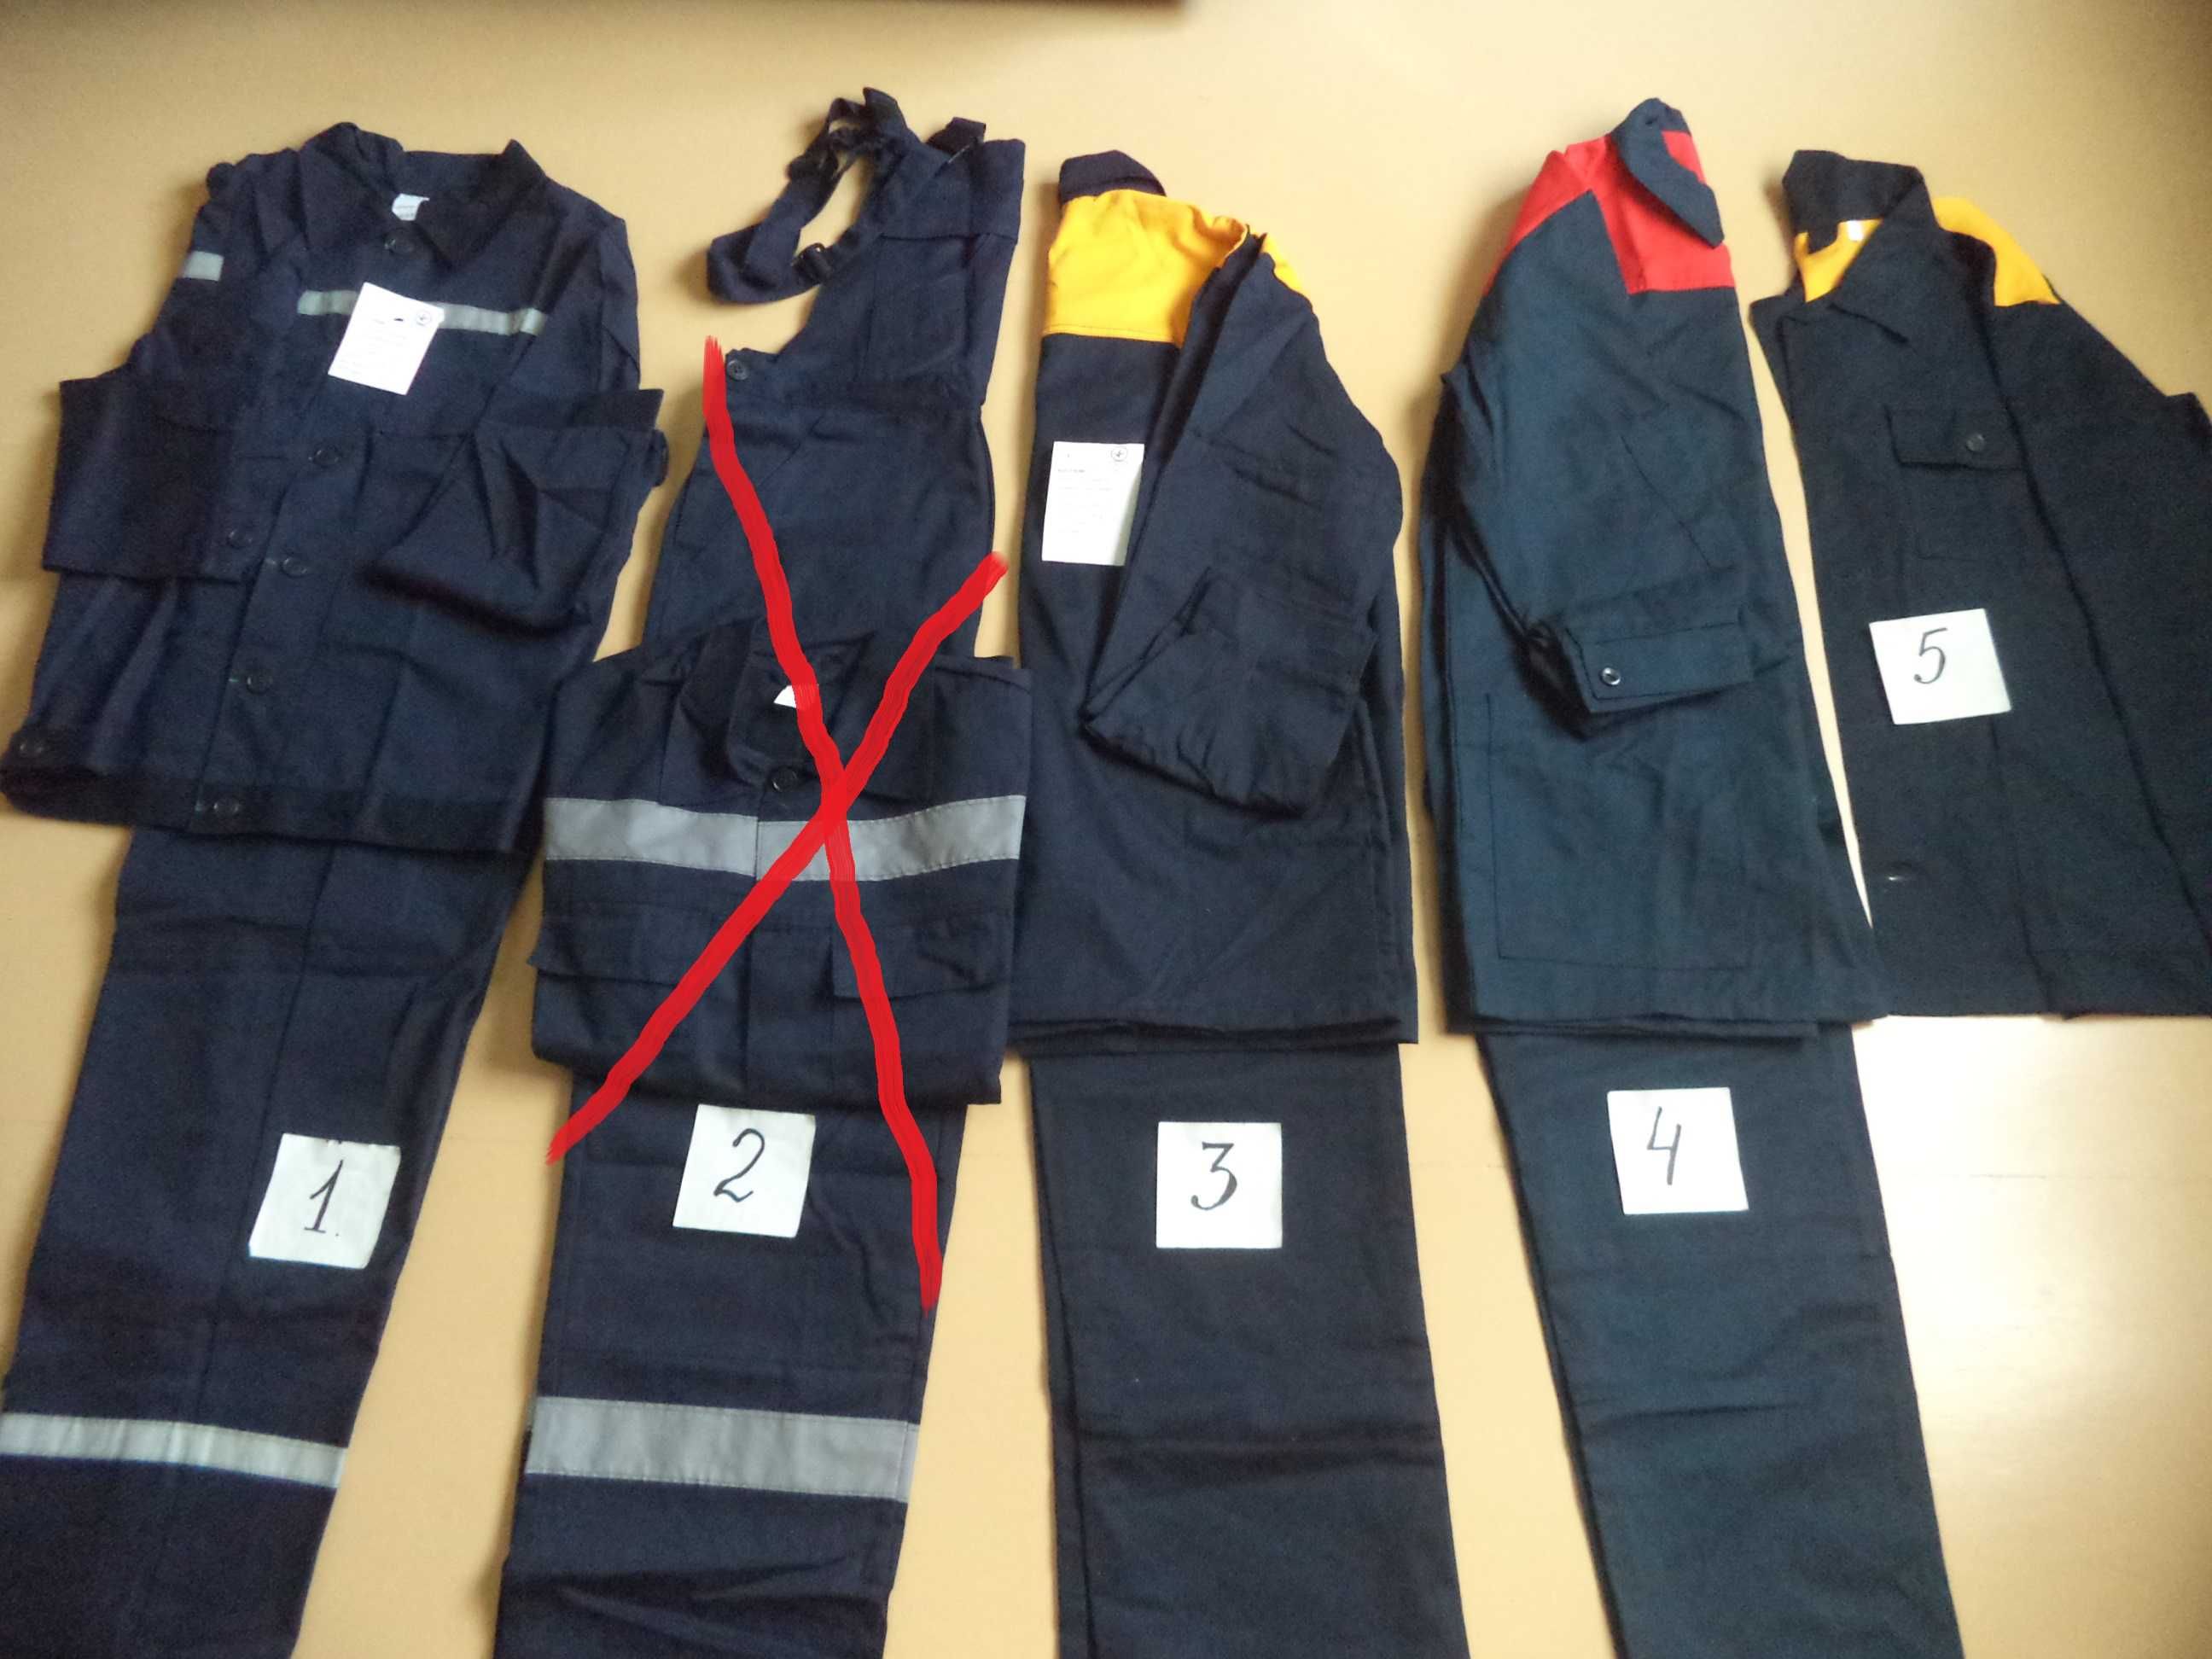 Рабочие костюмы: куртка и брюки, 100 % хлопок, Украина